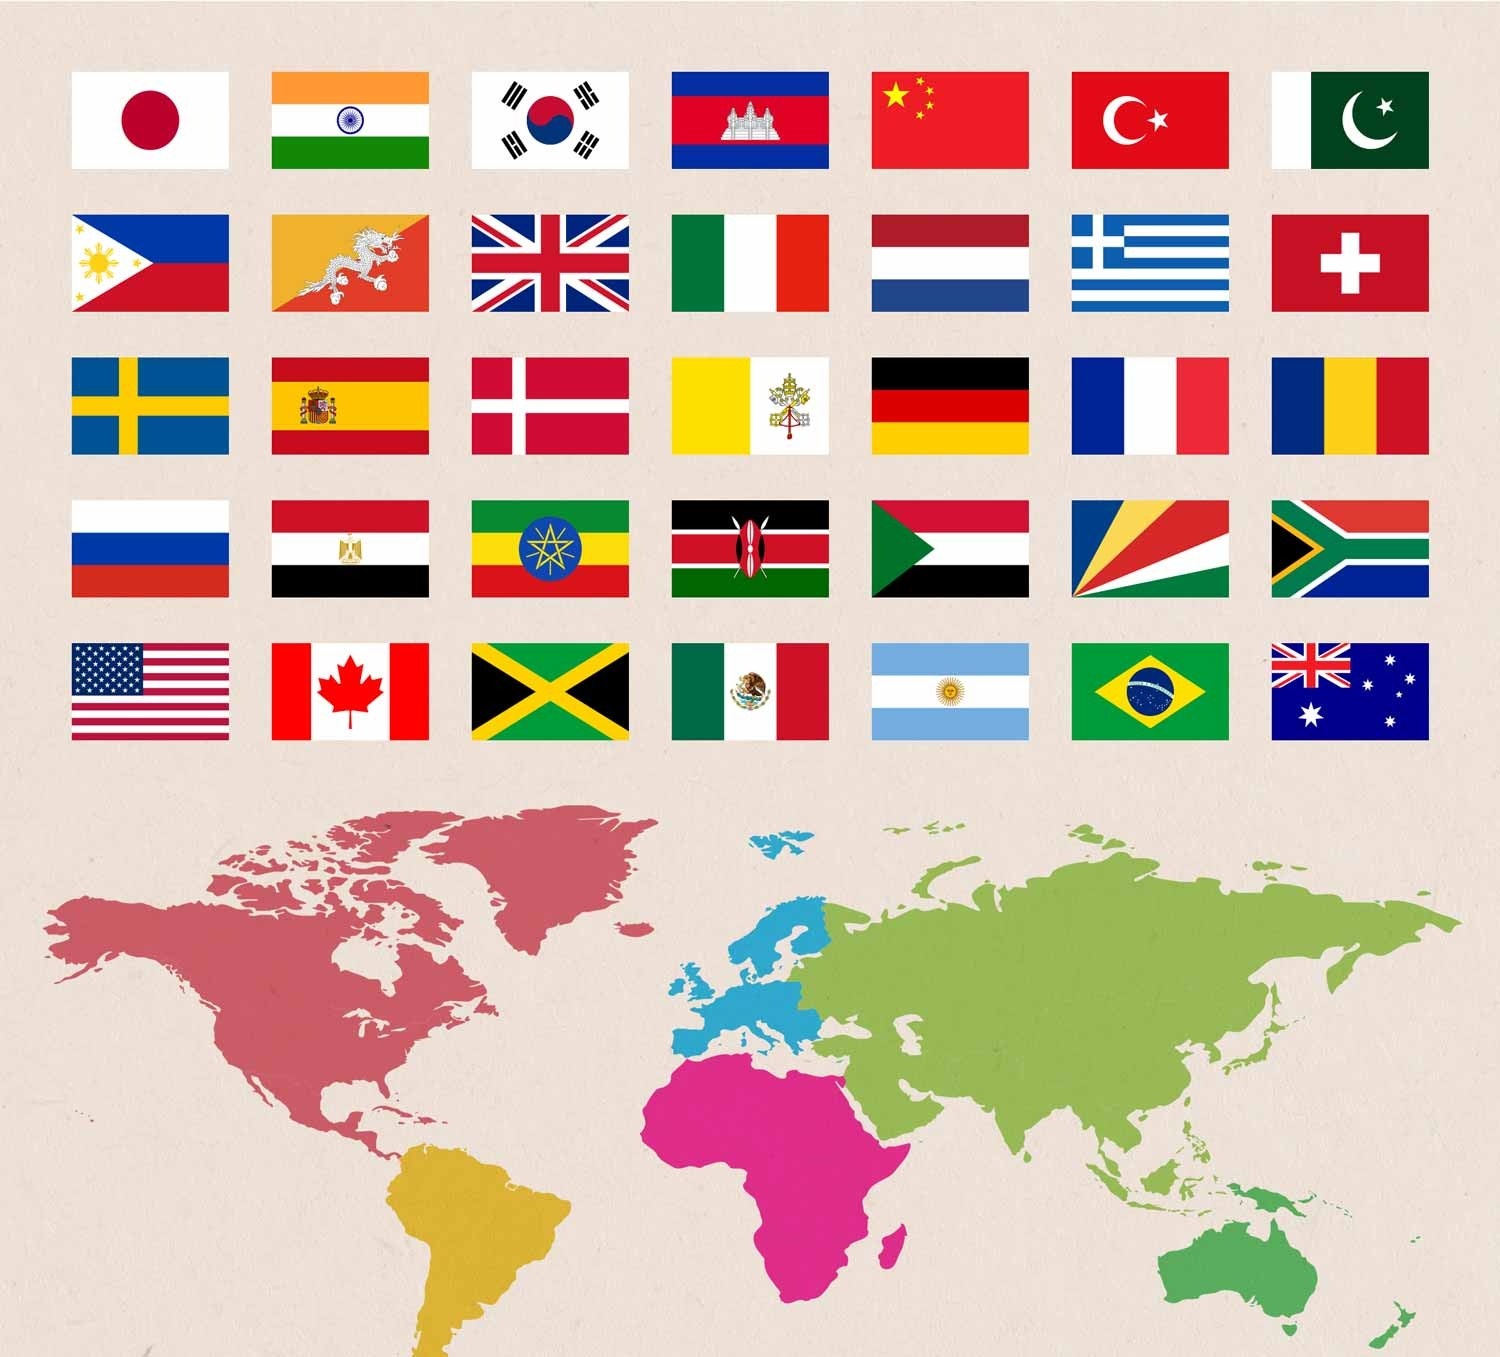 世界の国旗 基本のシンボル 国旗のデザインを学ぼう 世界の国旗 デザインから世界を学ぼう